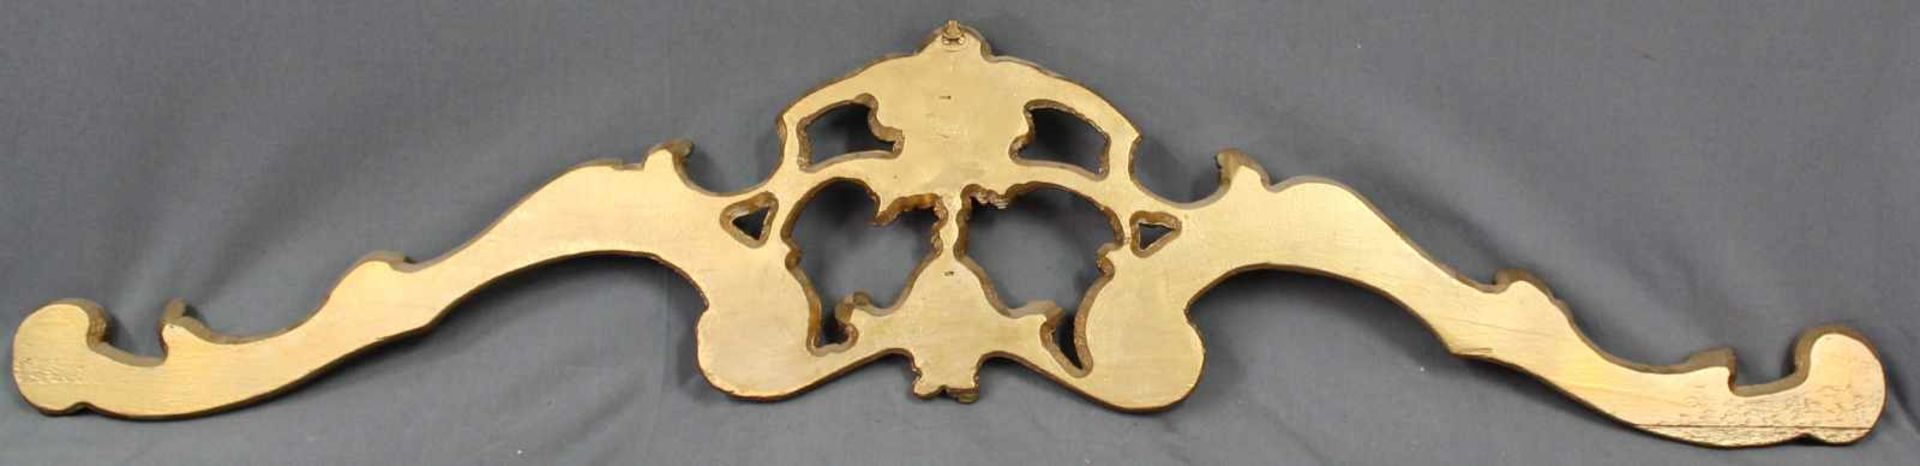 Supraporte. Holz. Geschnitzt, goldfarben gefasst. 132 cm breit. Supraporte. Wood. Carved, gold- - Image 2 of 3